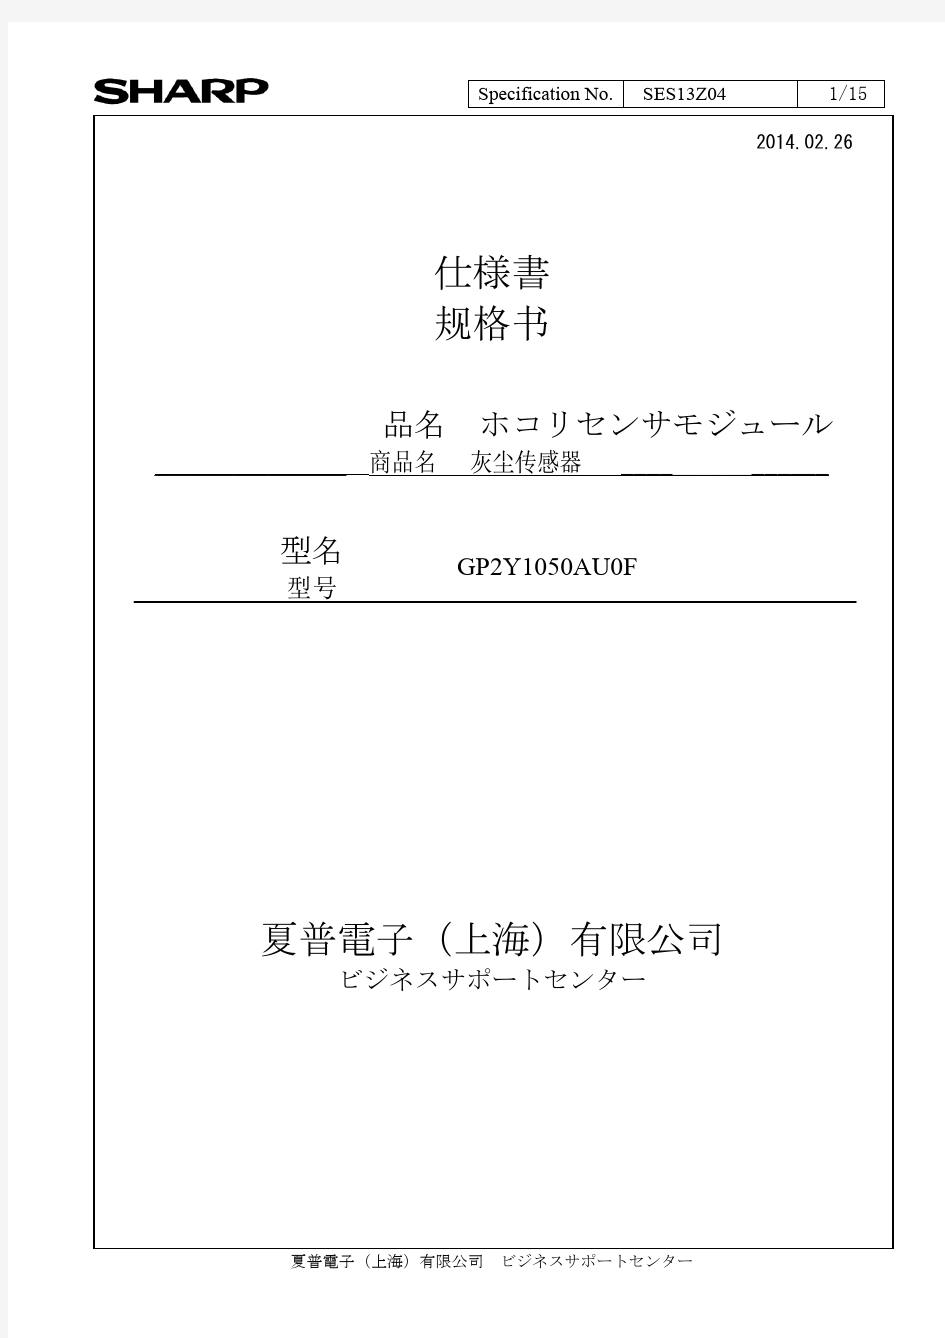 夏普二代GP2Y1050AU 原厂规格书 日文版 完整版(灰尘传感器规格书-修订版20140226)